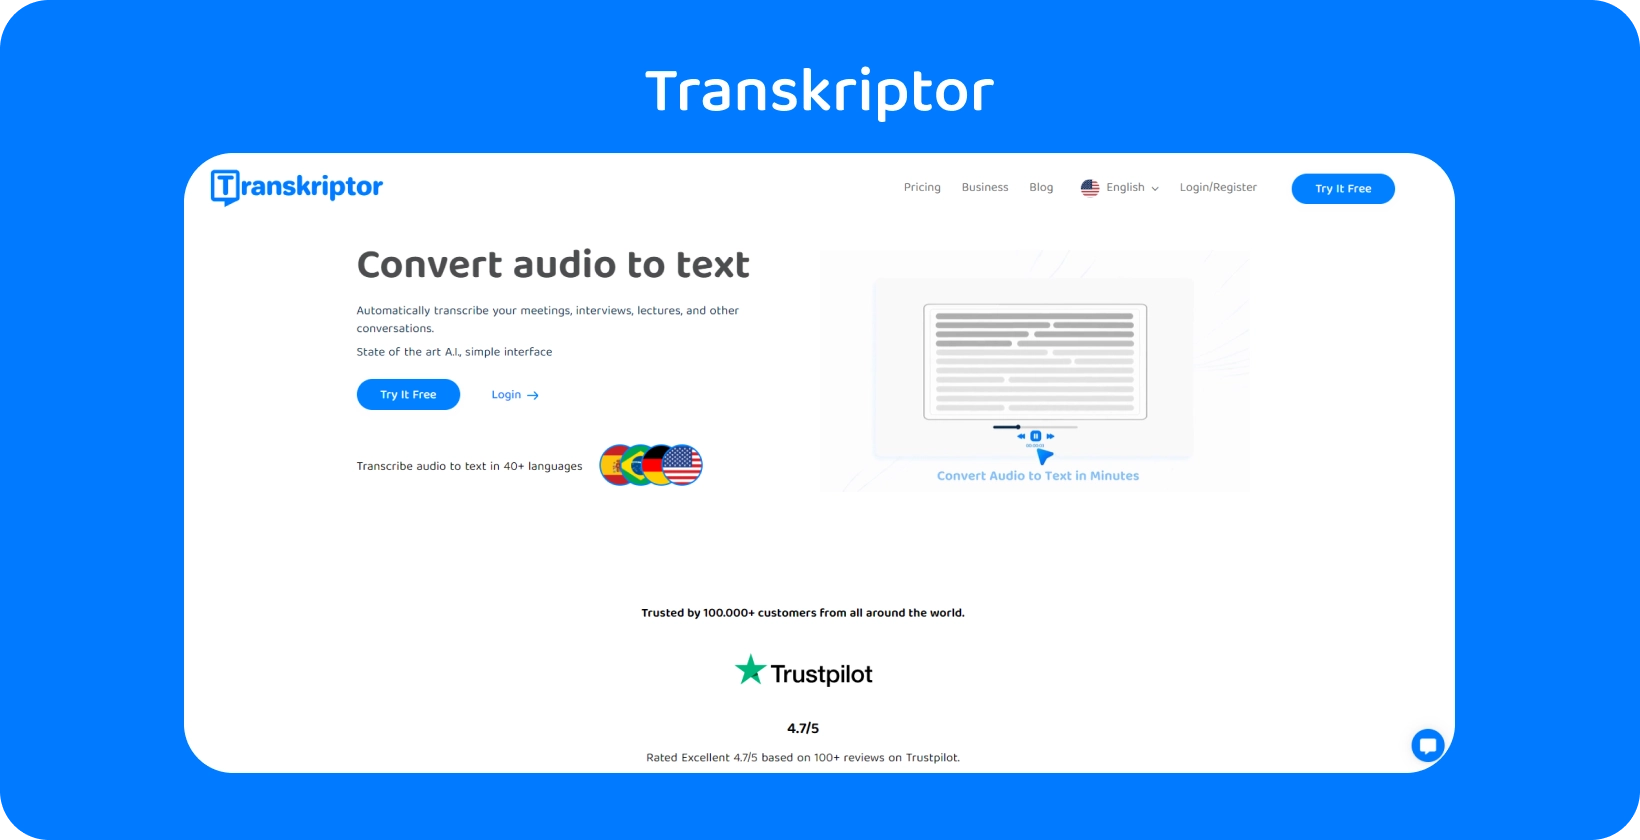 Transkriptor interface apresenta o recurso de assistente de reunião, agilizando a transcrição de pesquisas qualitativas.